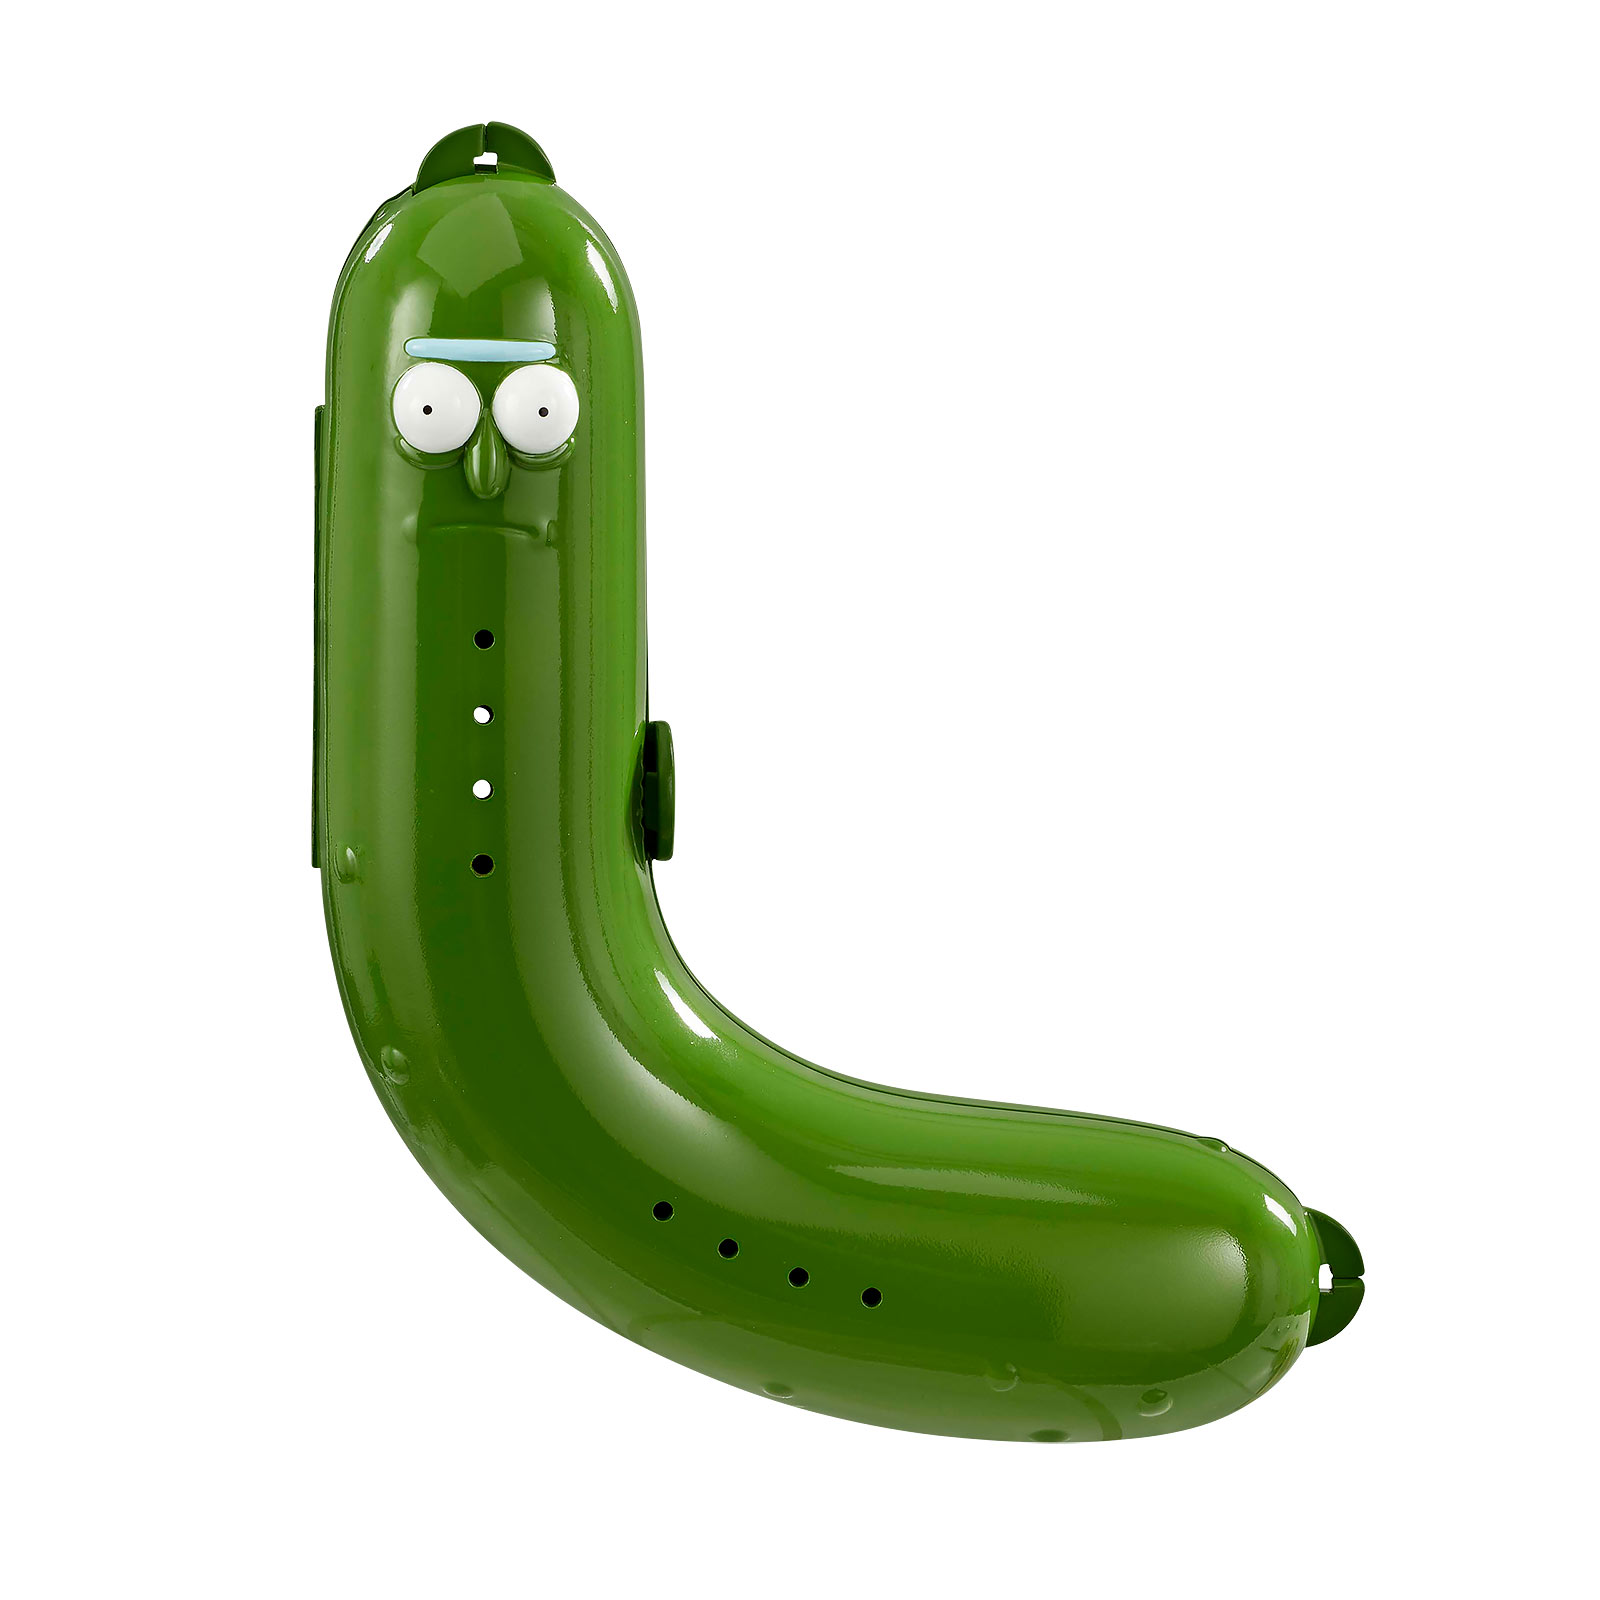 Rick and Morty - Pickle Rick Banana Box